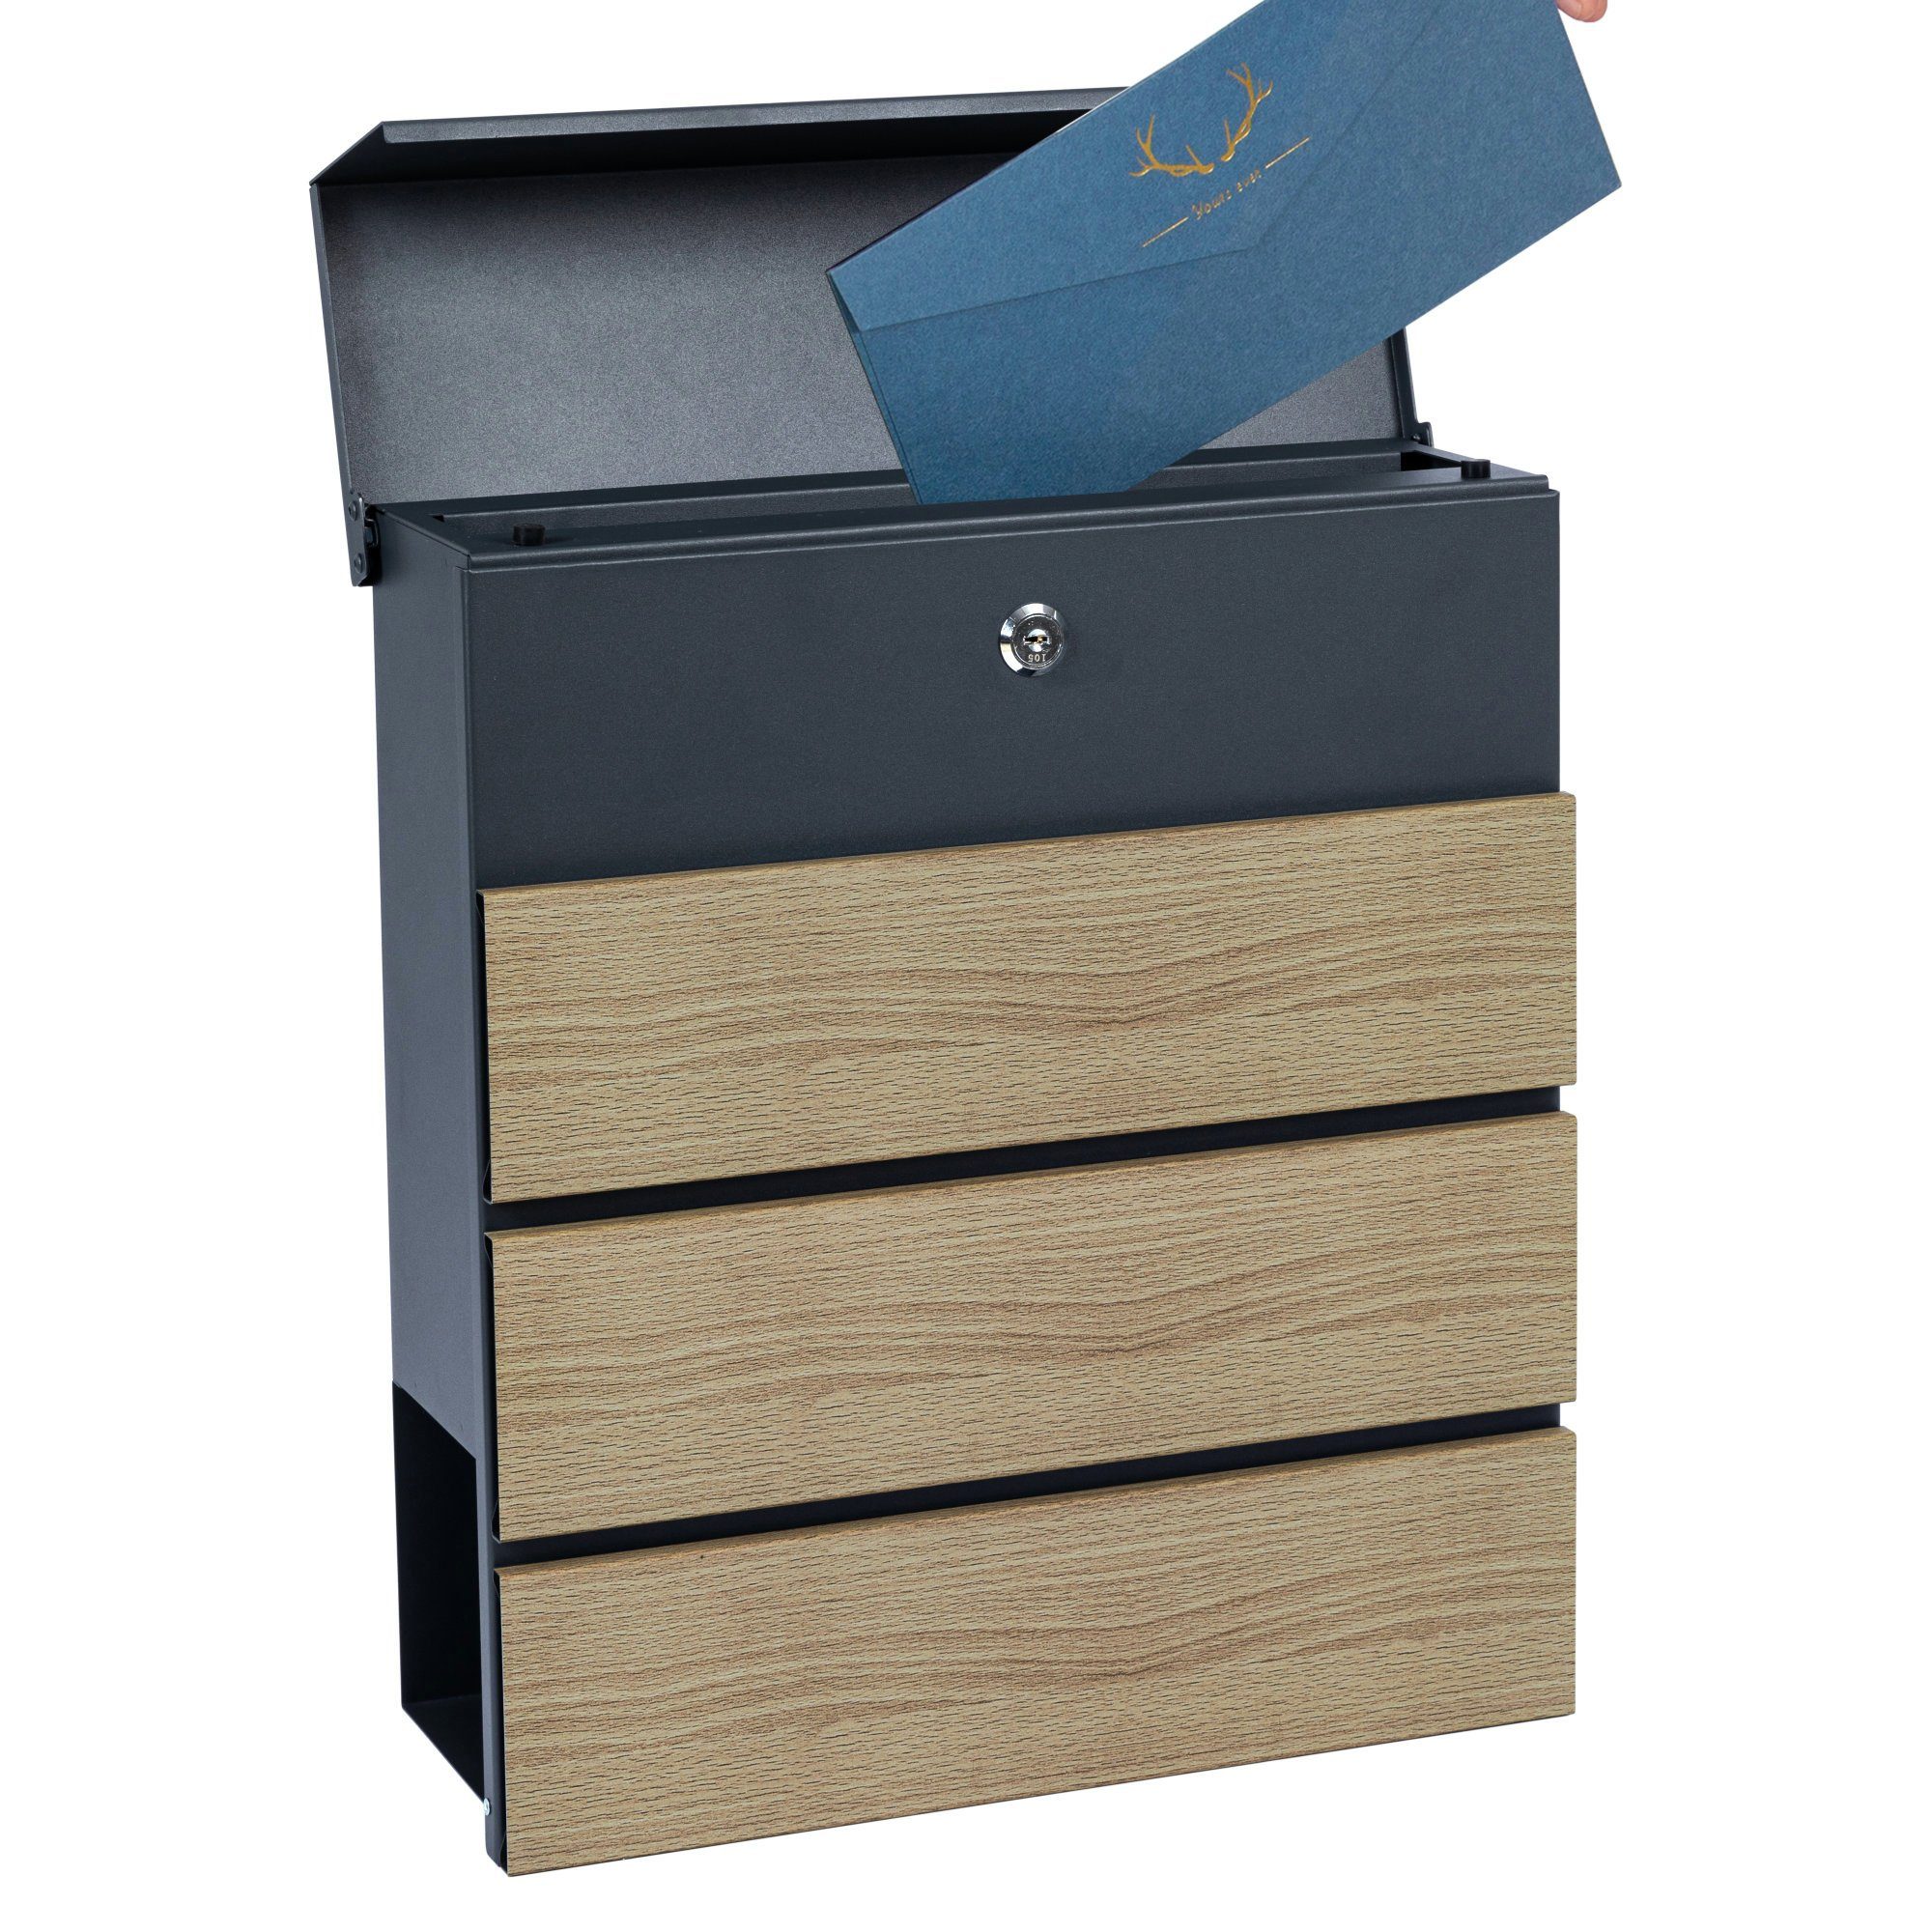 Zelsius Wandbriefkasten Briefkasten Wood Mechanismus, RAL7016 Absenkautomatik Soft-Close mit Anthrazit, Holzoptik, Integrierter Zeitungsfach